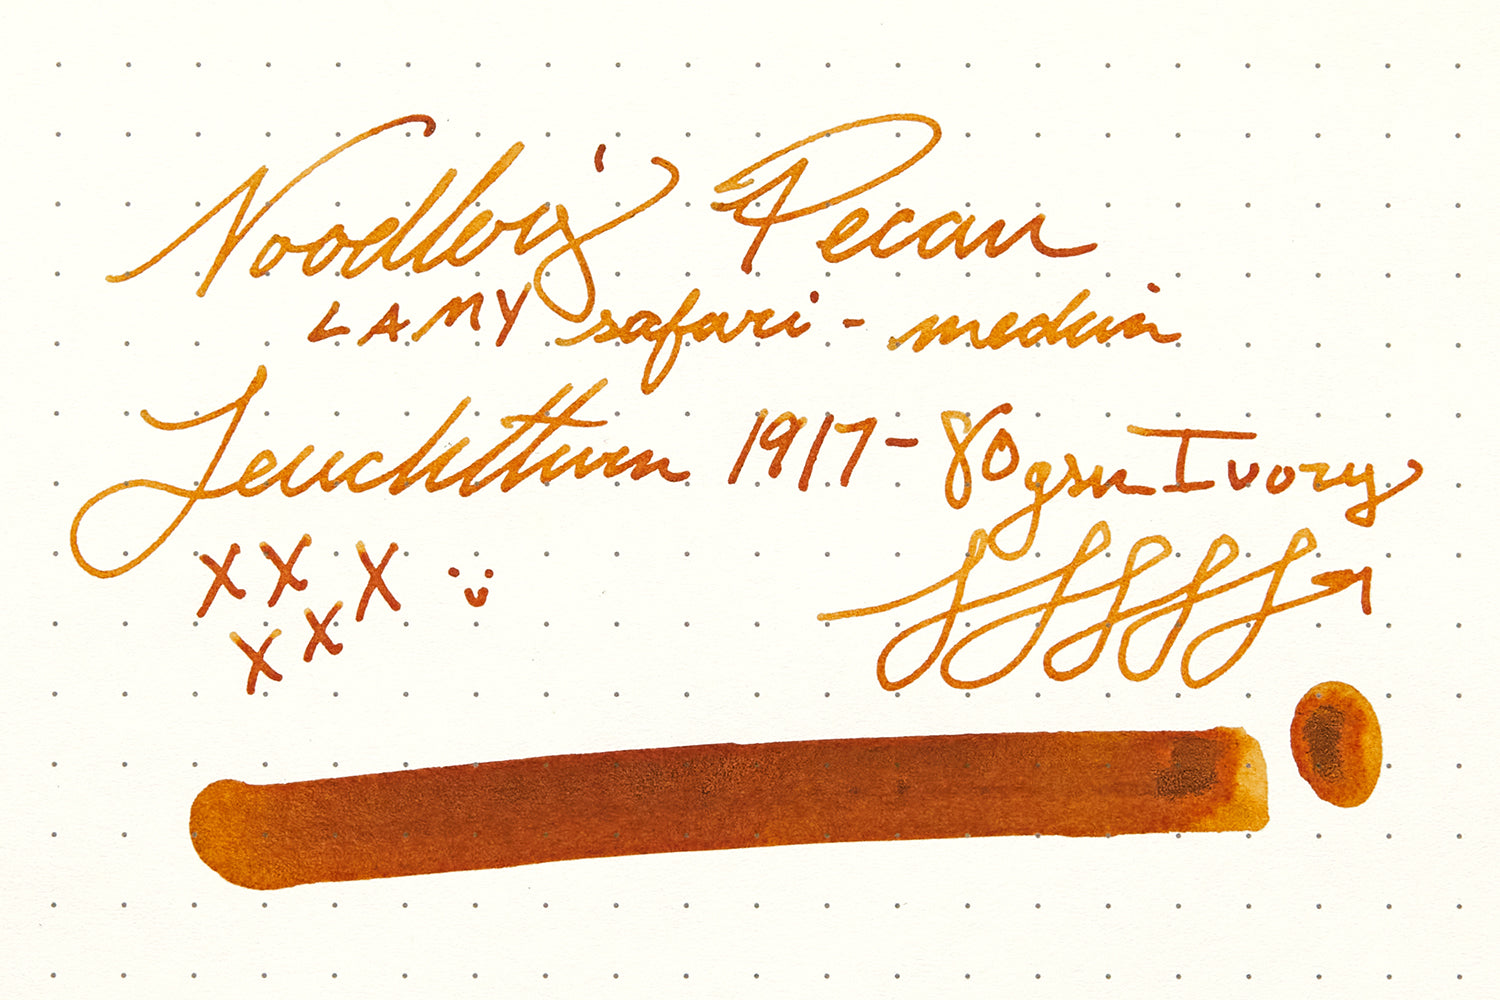 Noodler's Pecan ink on Leuchtturm1917  paper